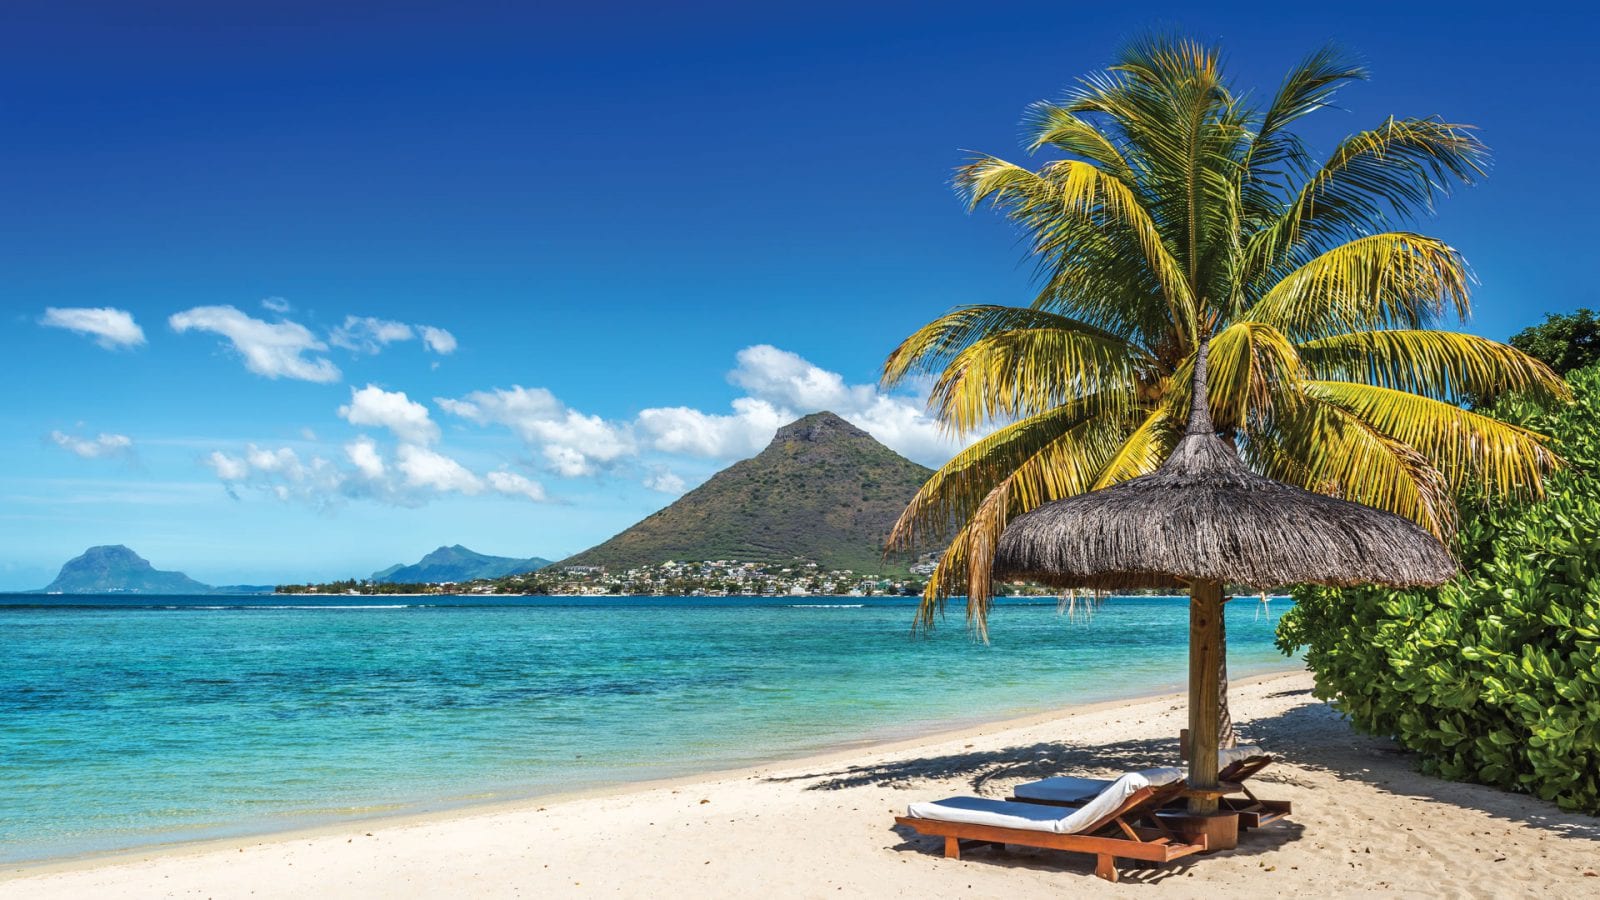 Mauritius Islands destinations in Africa